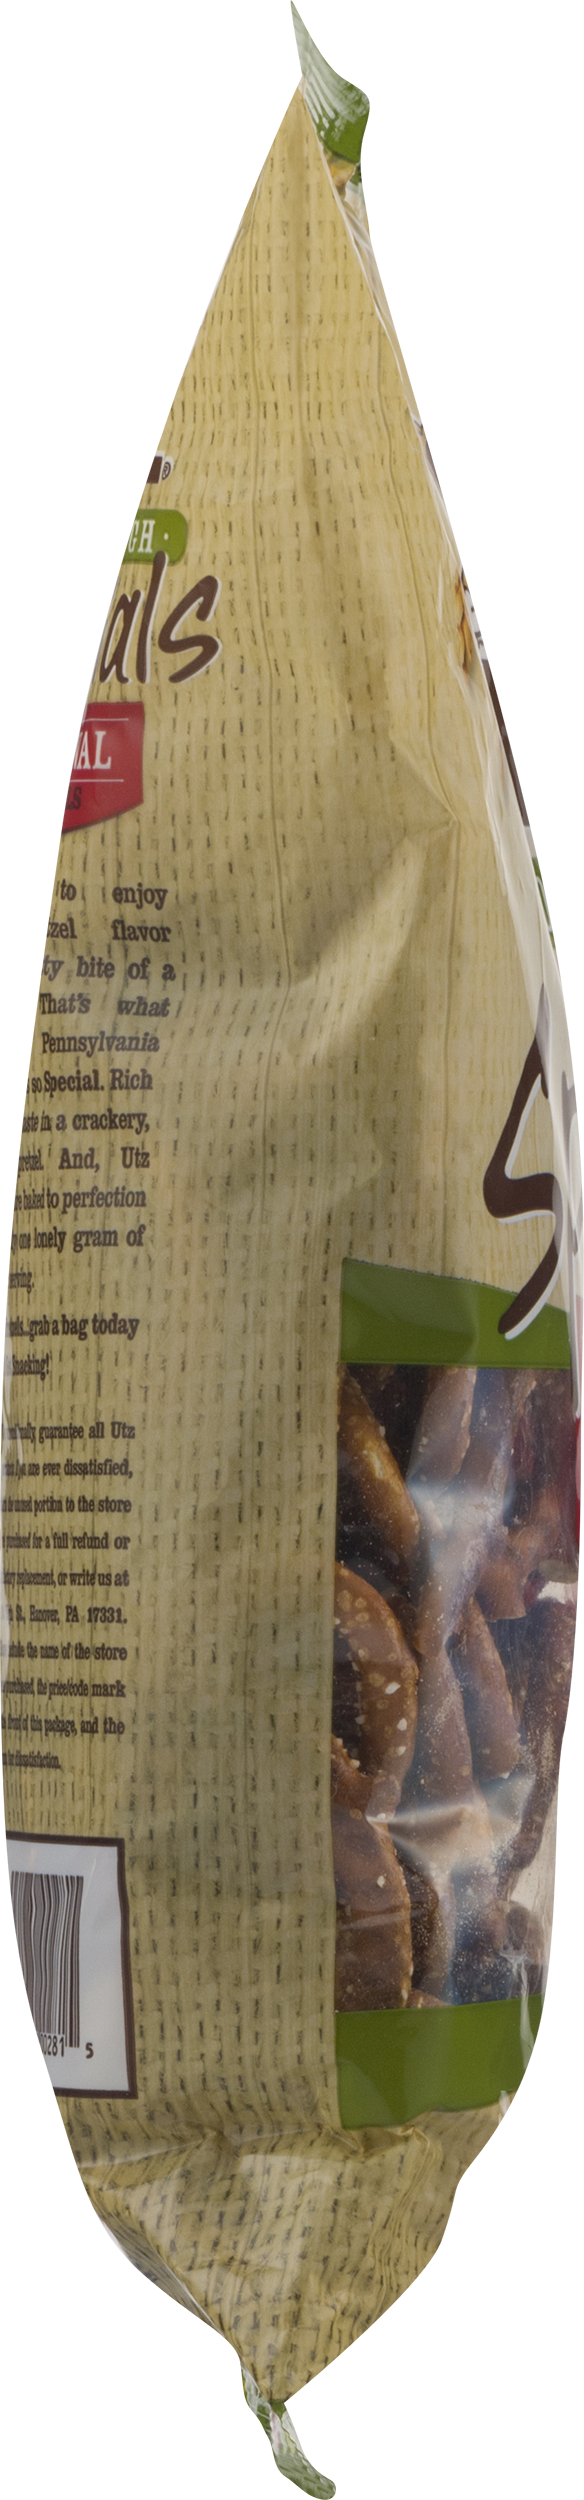 Utz Quality Foods Sourdough Specials Original Pretzels 16 oz. Bag